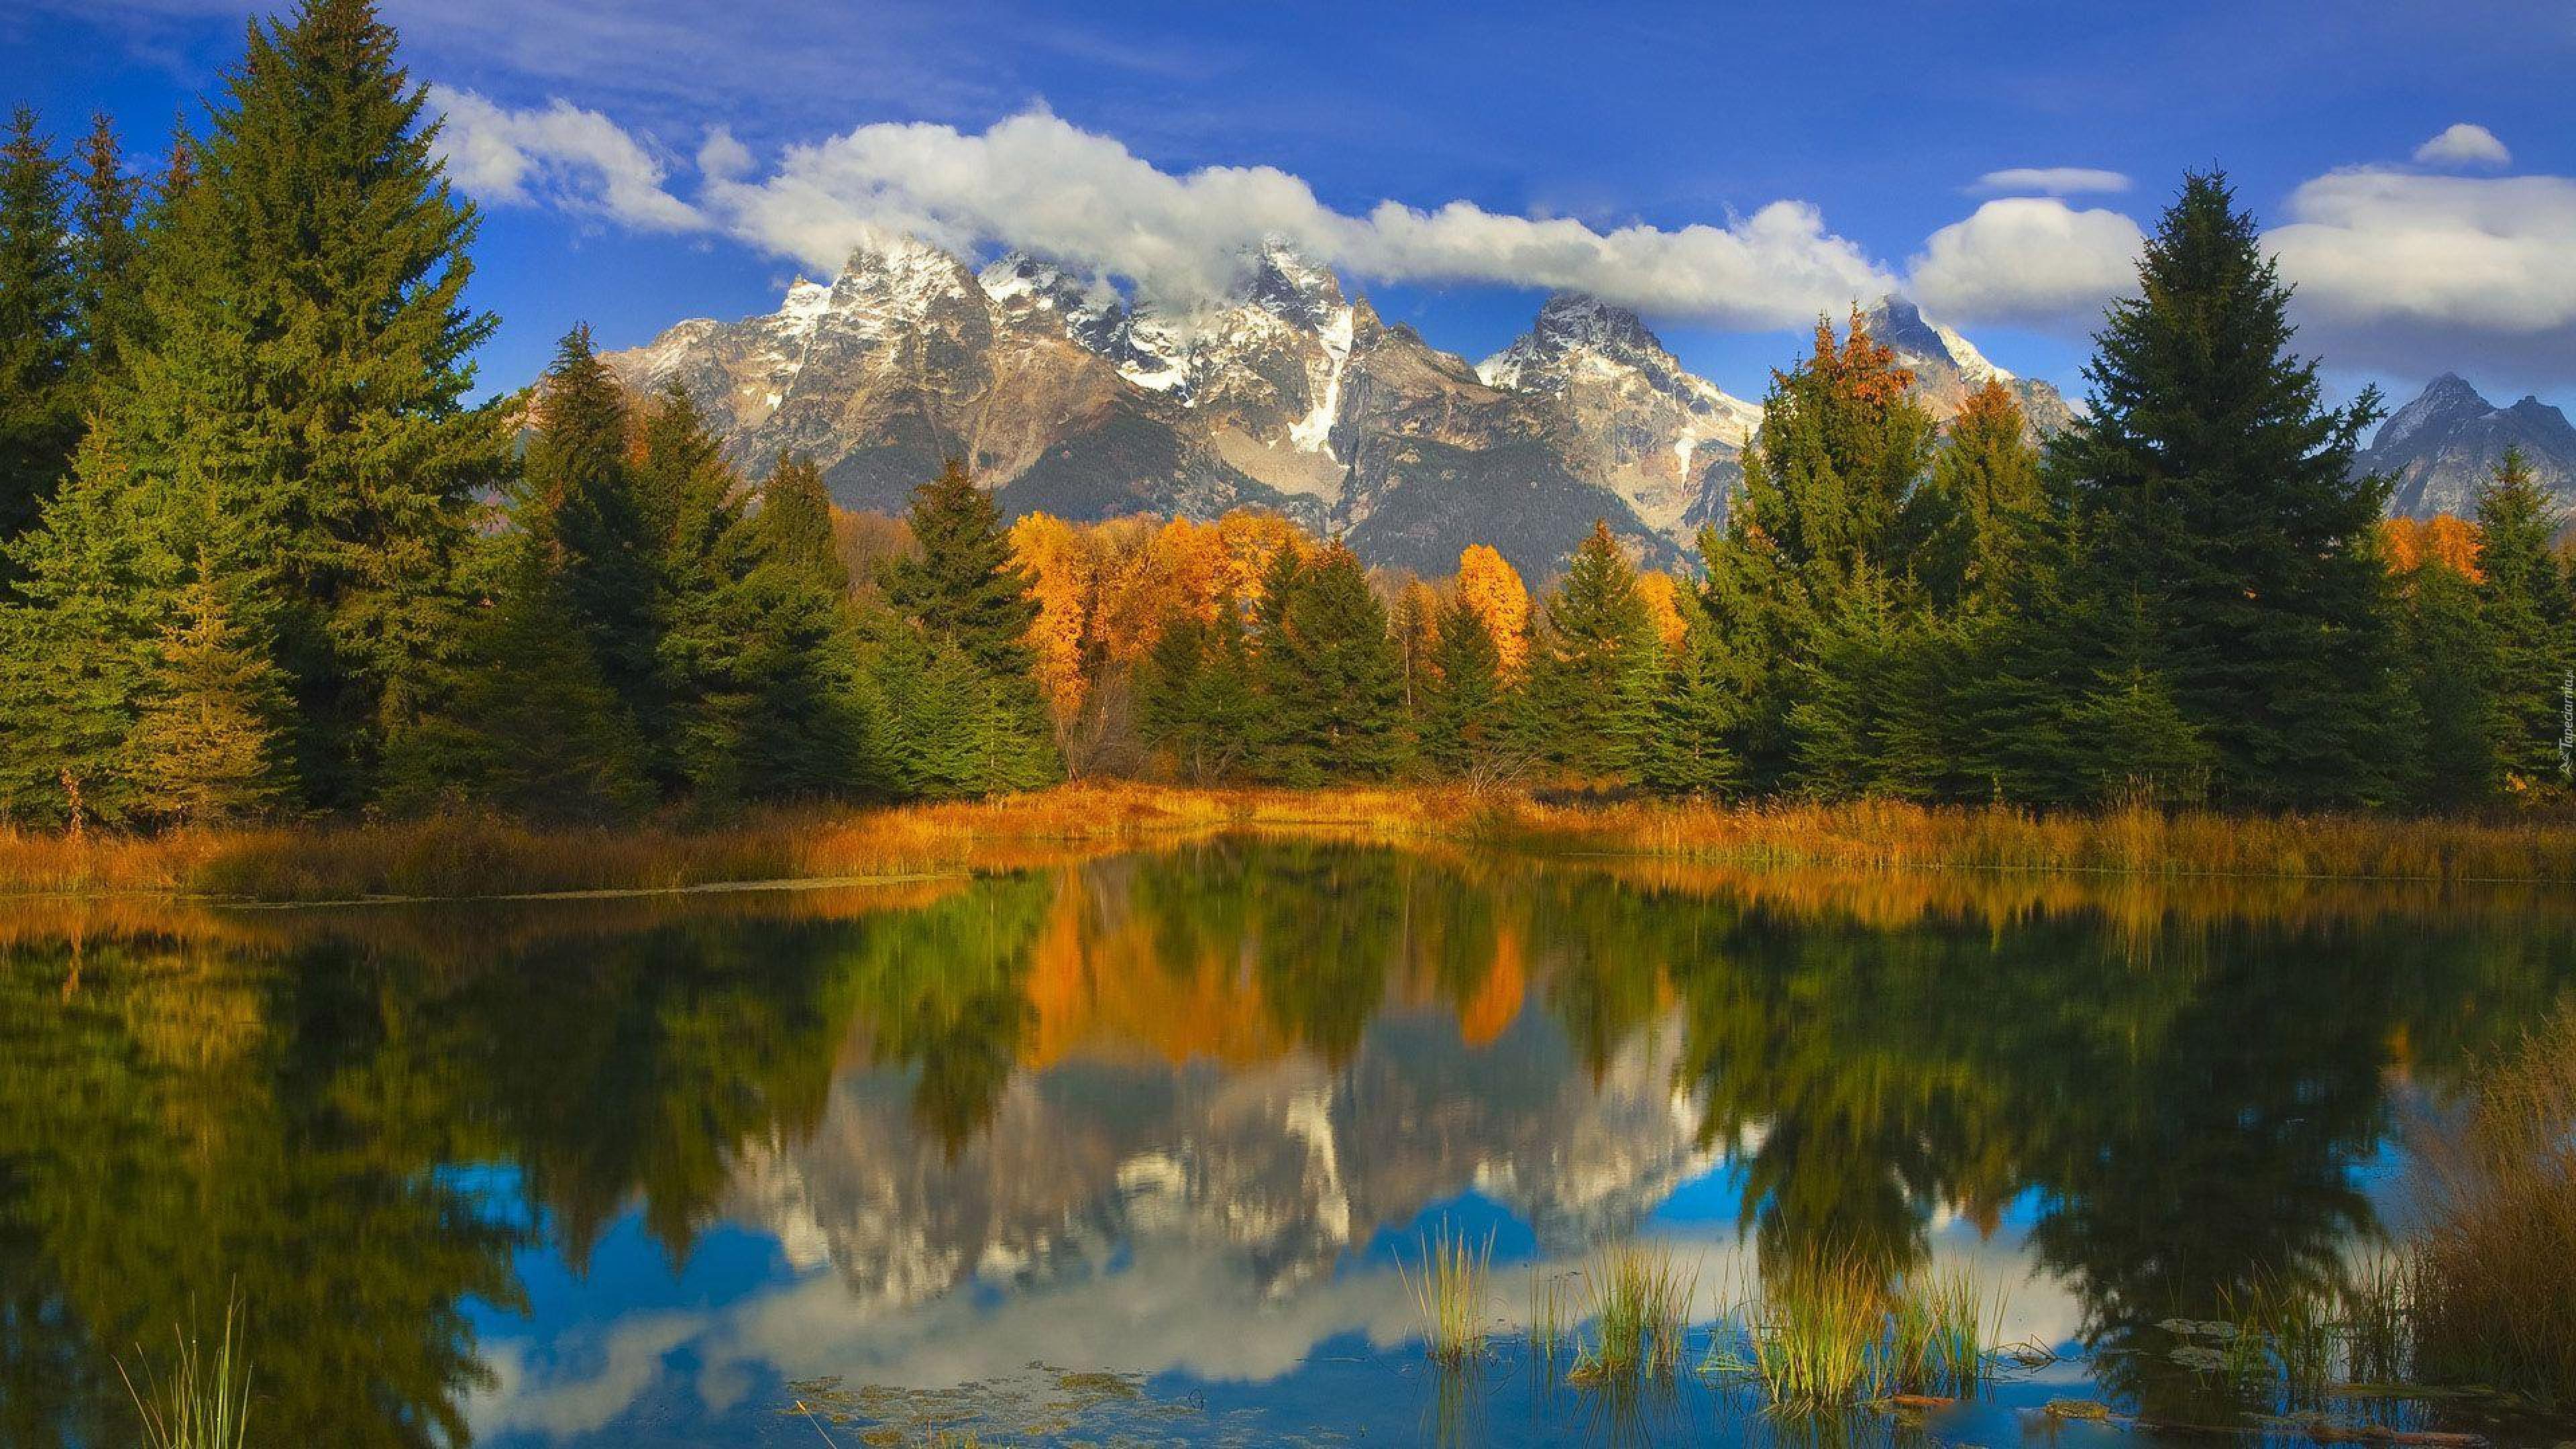 Картинка на обои высокого качества. Гранд Титон осенью. Природа. Природный пейзаж. Красота природы.